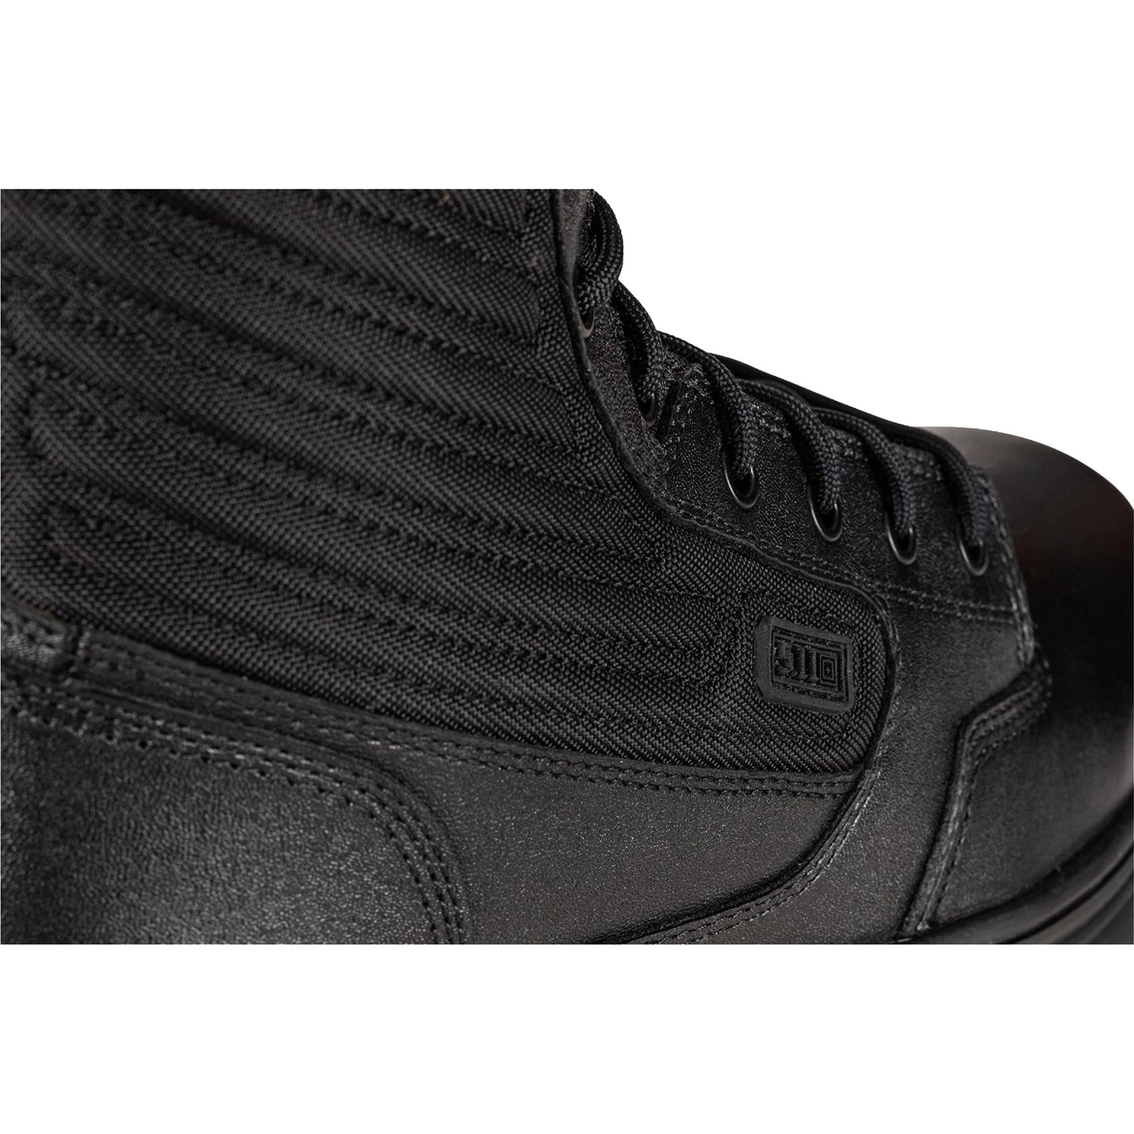 5.11 Men's Evo 2.0 Black 8 in. Boots - Image 7 of 7